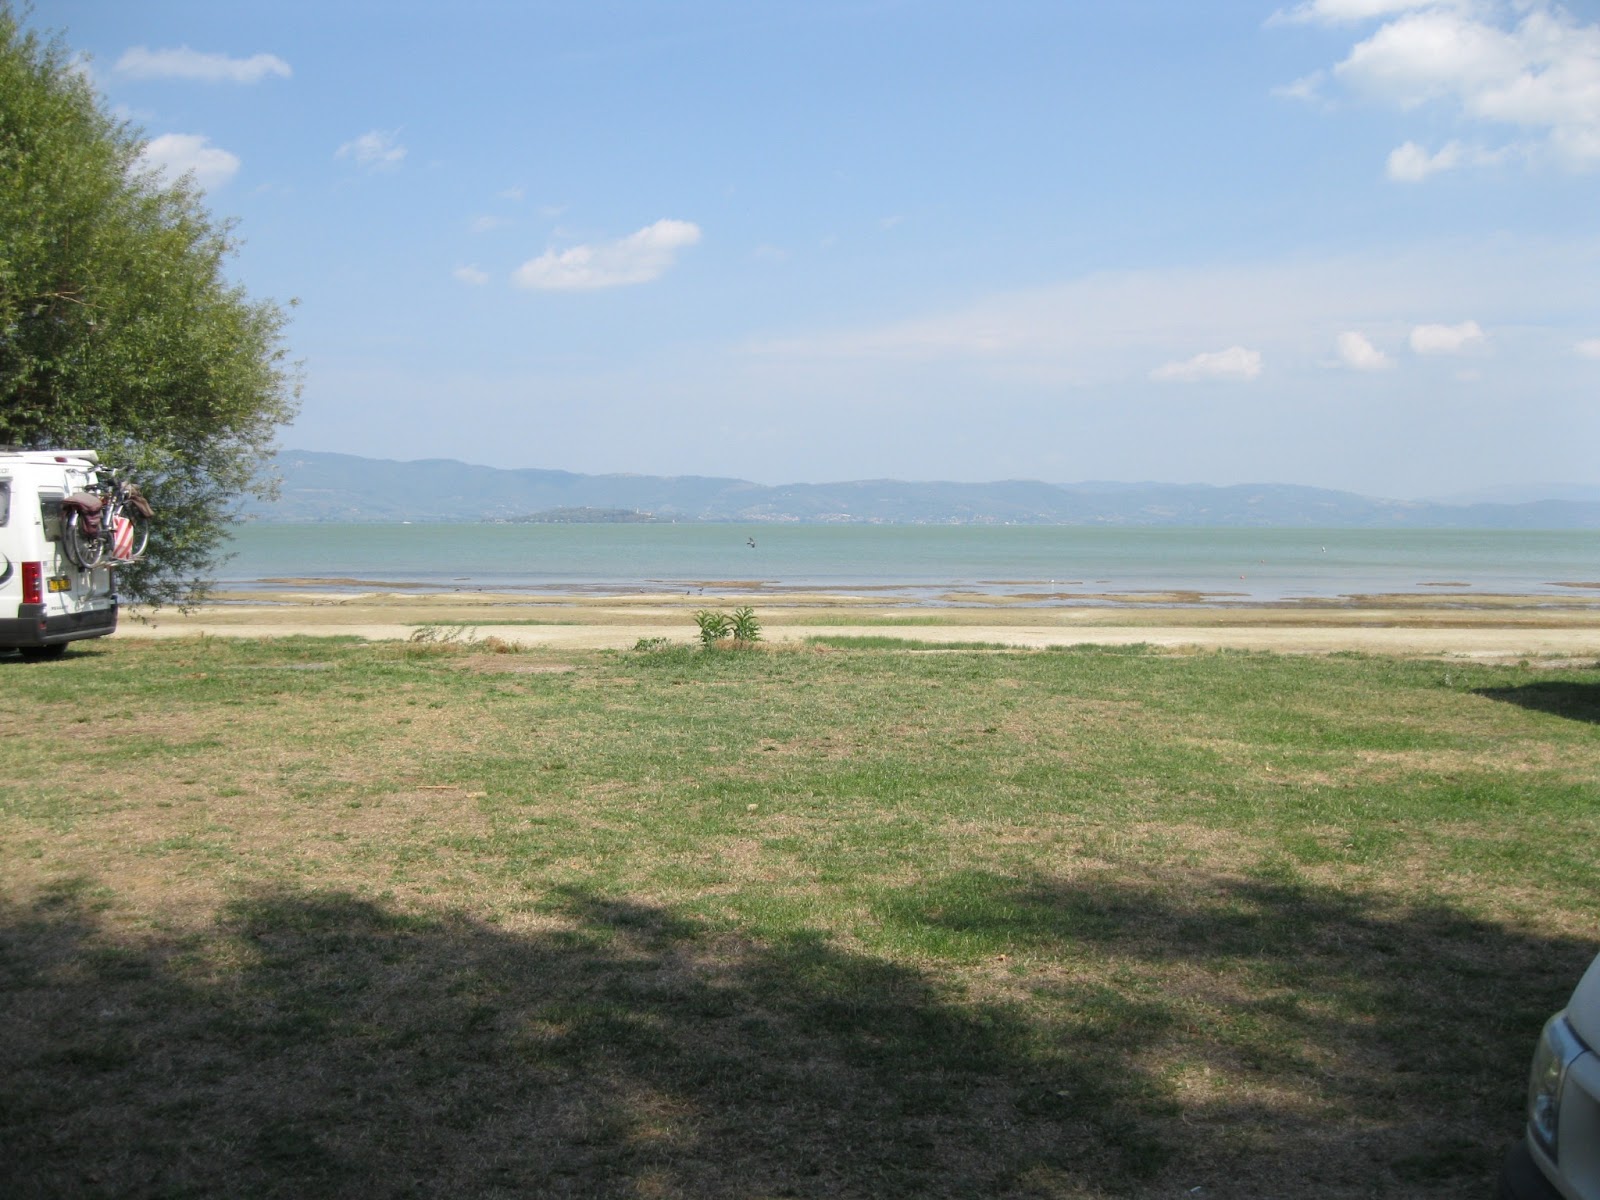 Zdjęcie Castiglione del Lago - popularne miejsce wśród znawców relaksu